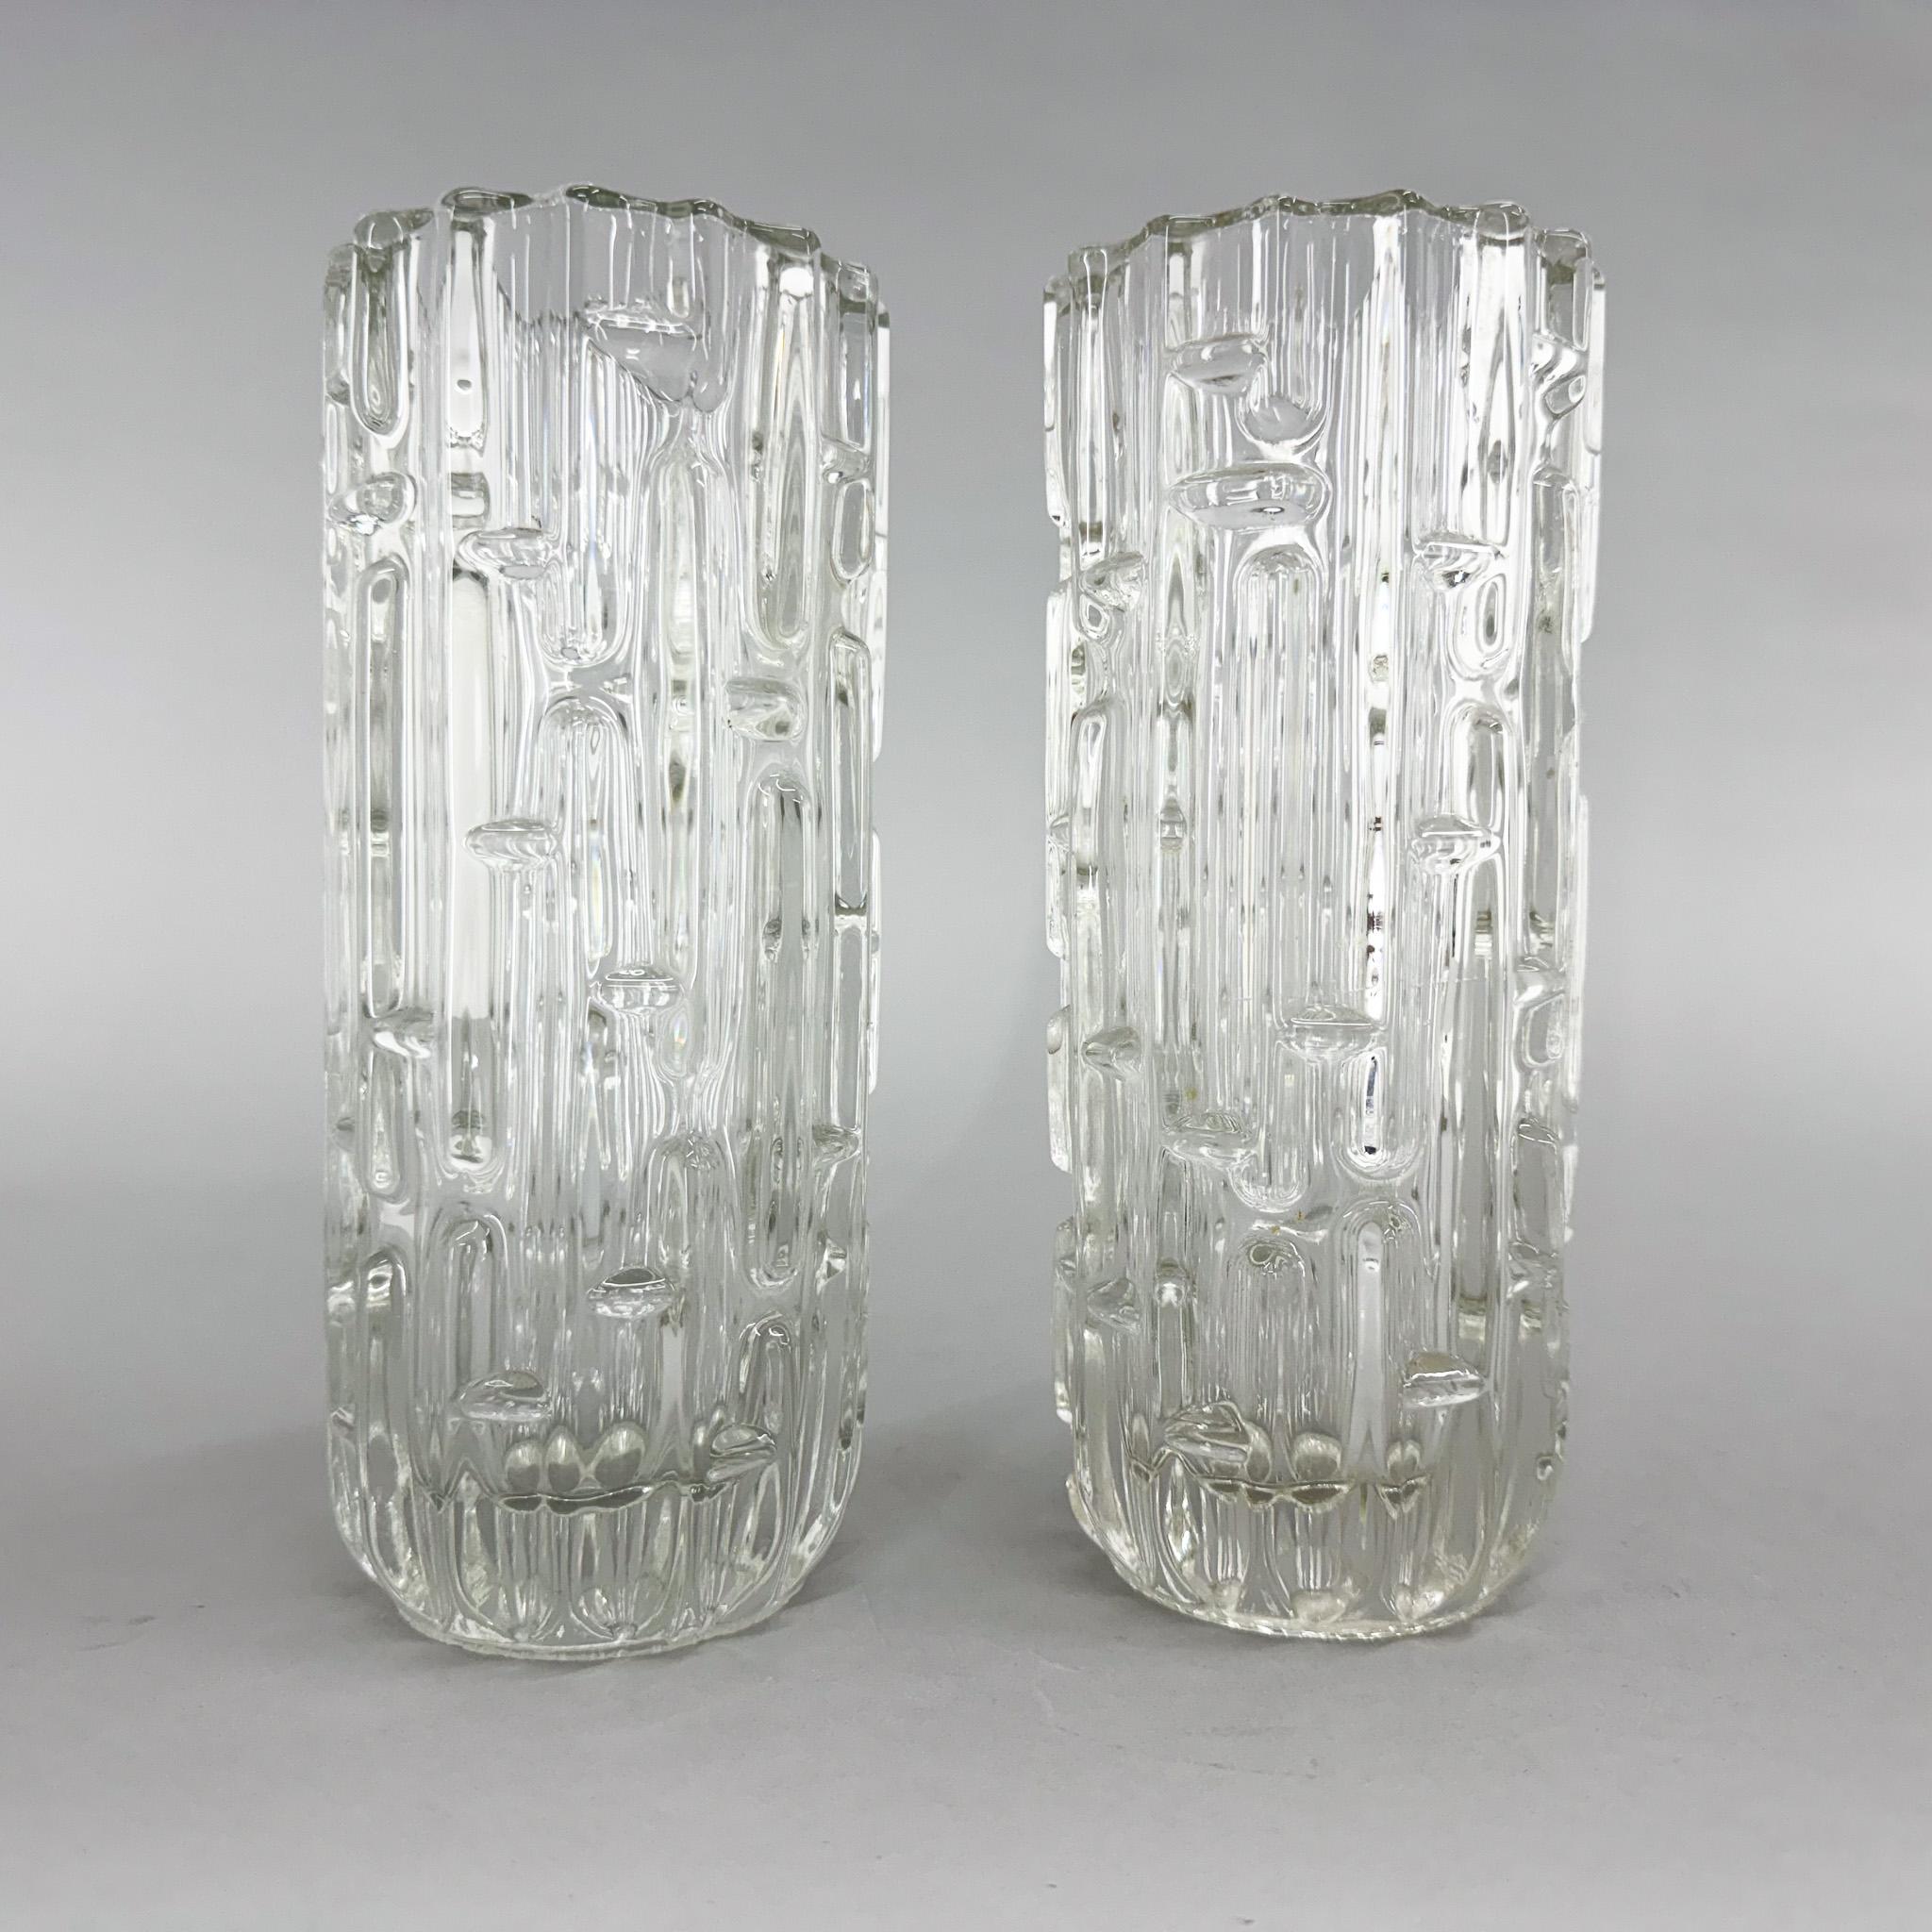 Die Vase ist aus dicht gepresstem Klarglas gefertigt.
Die Vase hat mehrere Ausbuchtungen, die an ein Labyrinth erinnern.
Entsprechend dieser Dekoration werden die Vasen Maze genannt.
Die Vasew wurden von František Vízner (1936 - 2011) in der zweiten